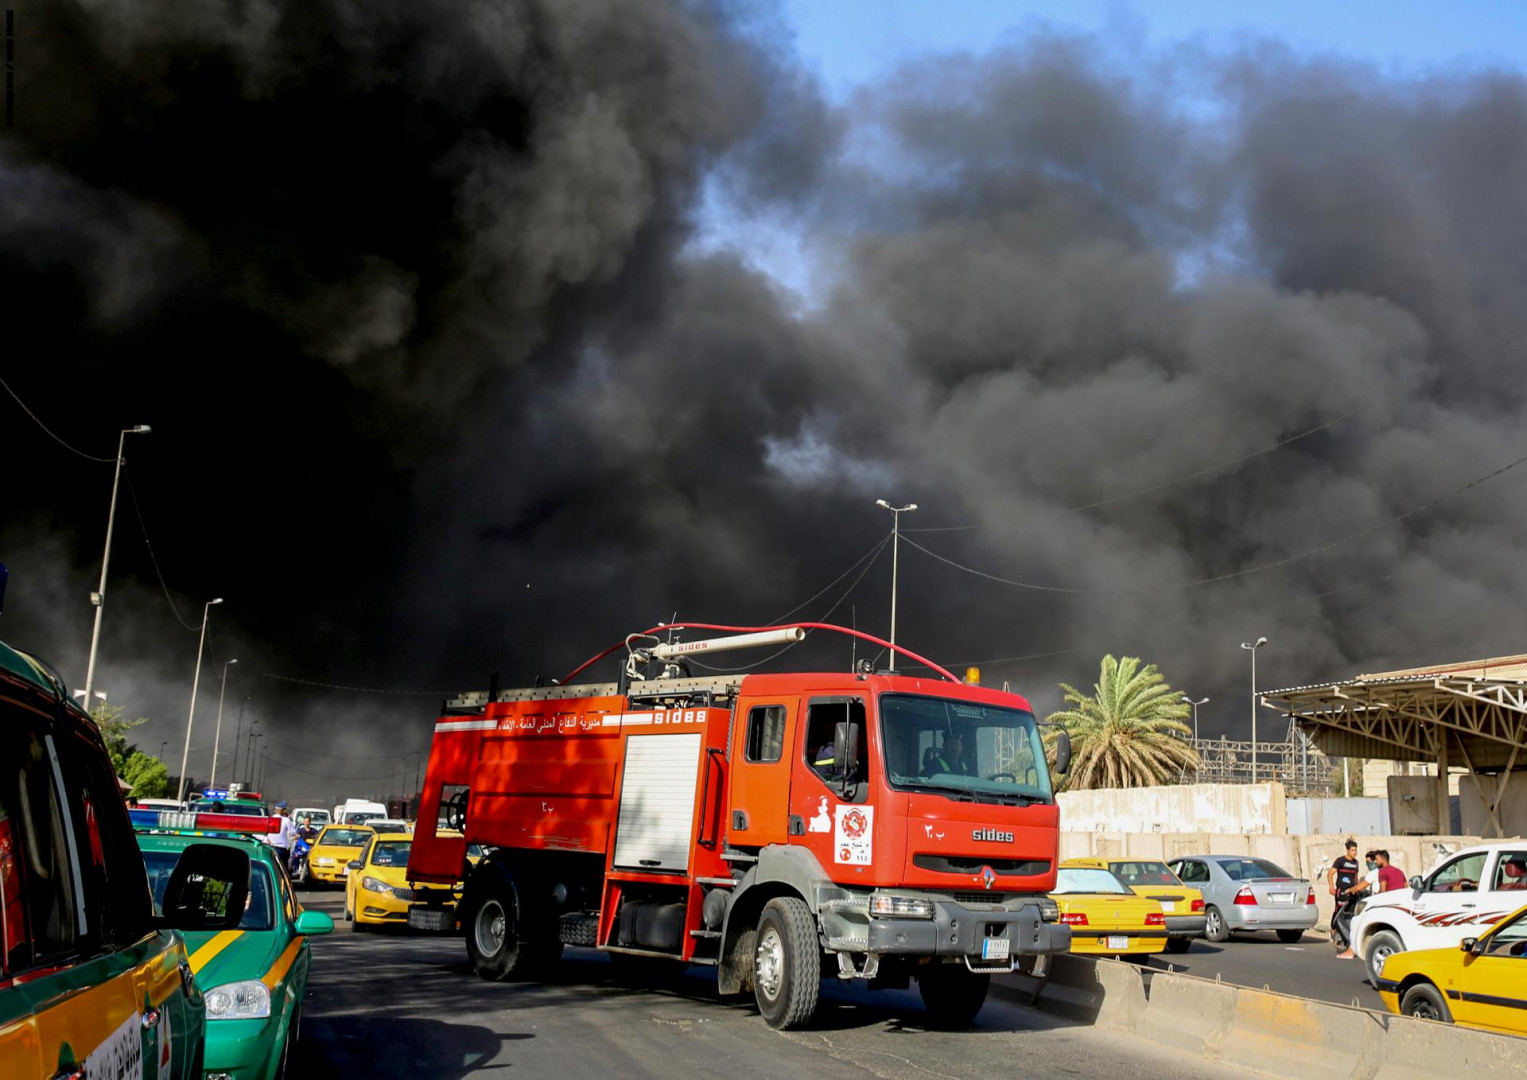 إخماد حريق بمستشفى في بابل واندلاع آخر بمحال تجارية وسط بغداد